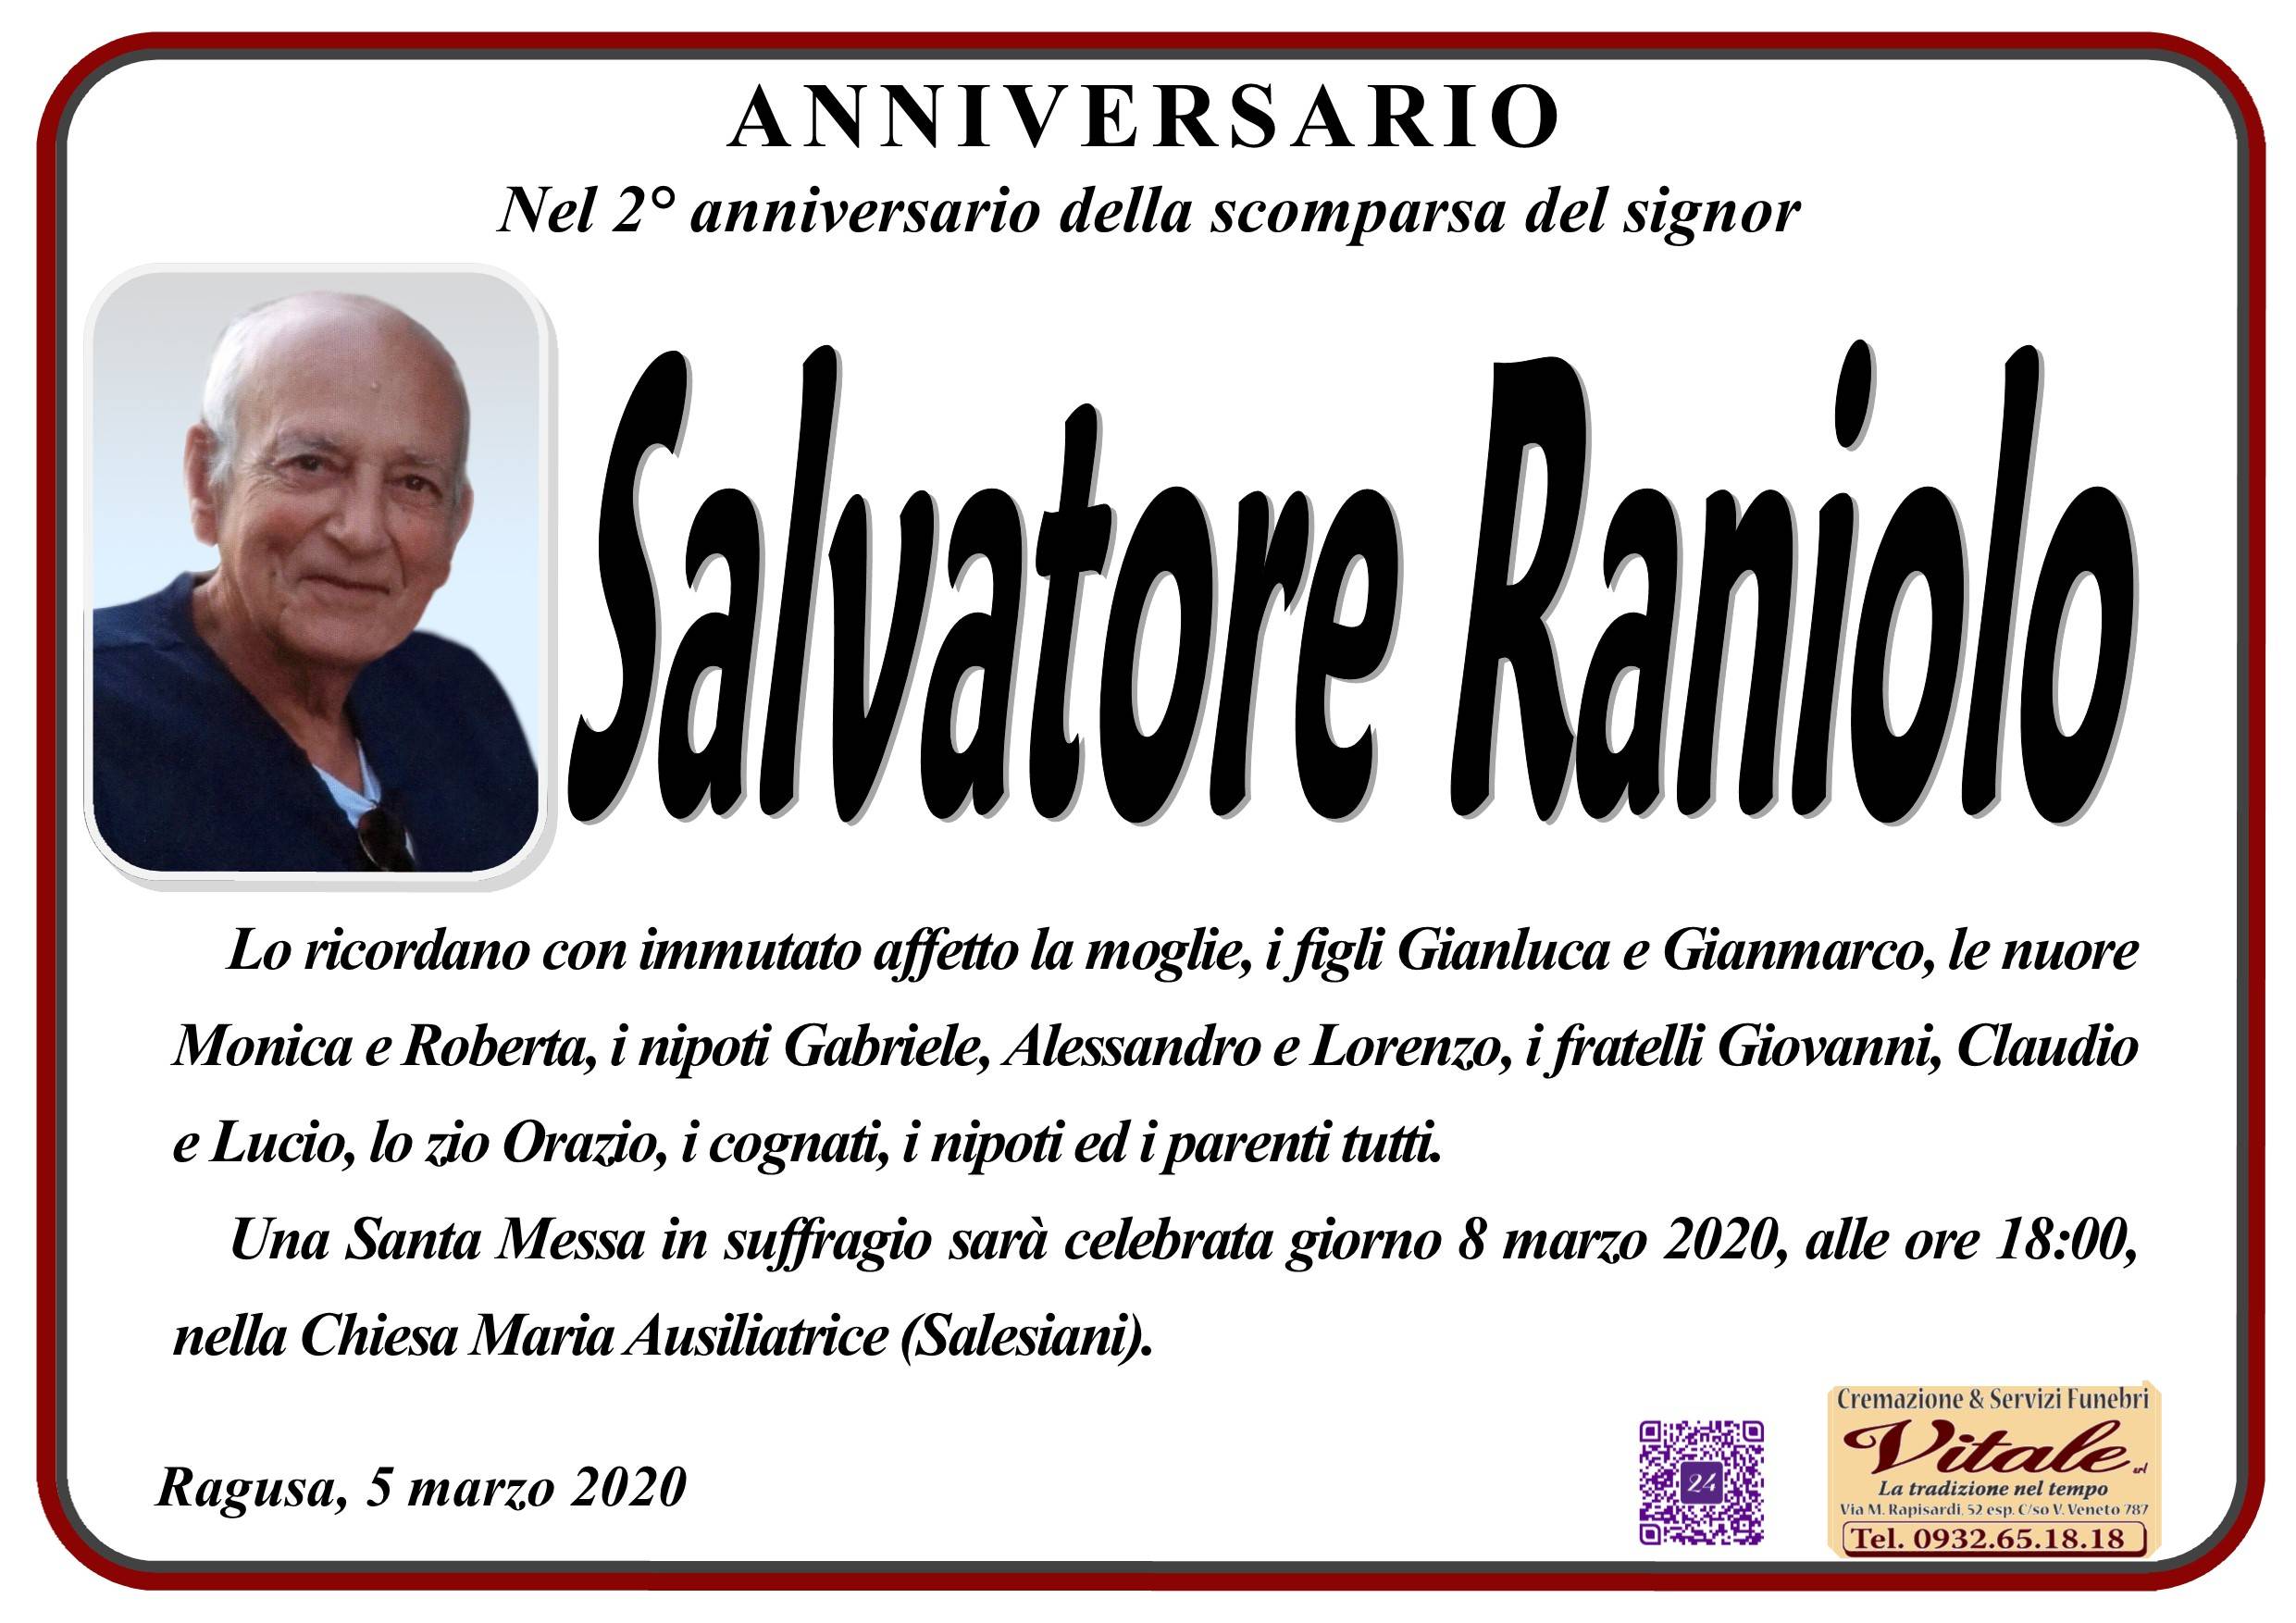 Salvatore Raniolo